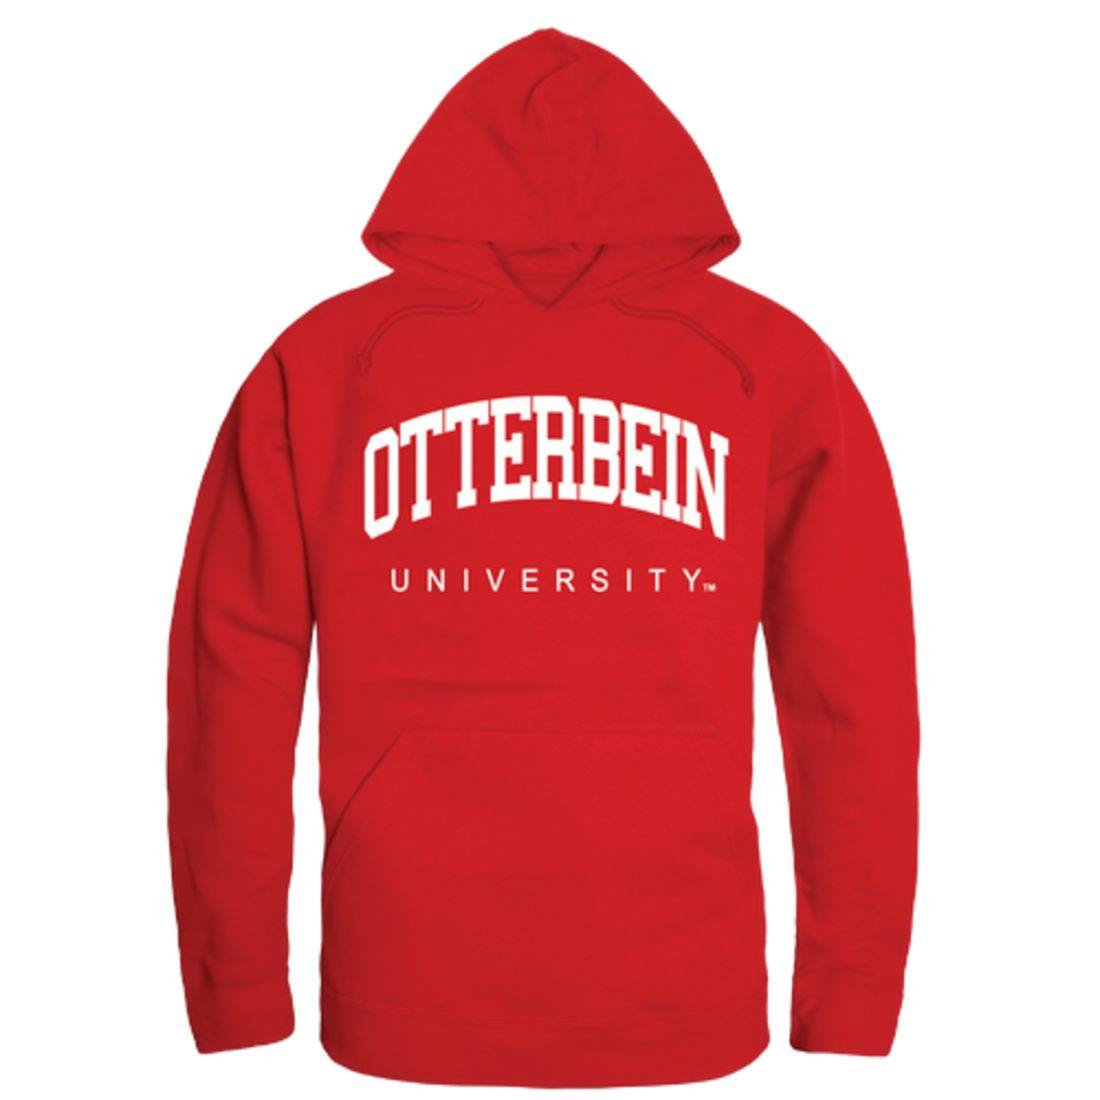 Otterbein University College Hoodie Sweatshirt Red-Campus-Wardrobe